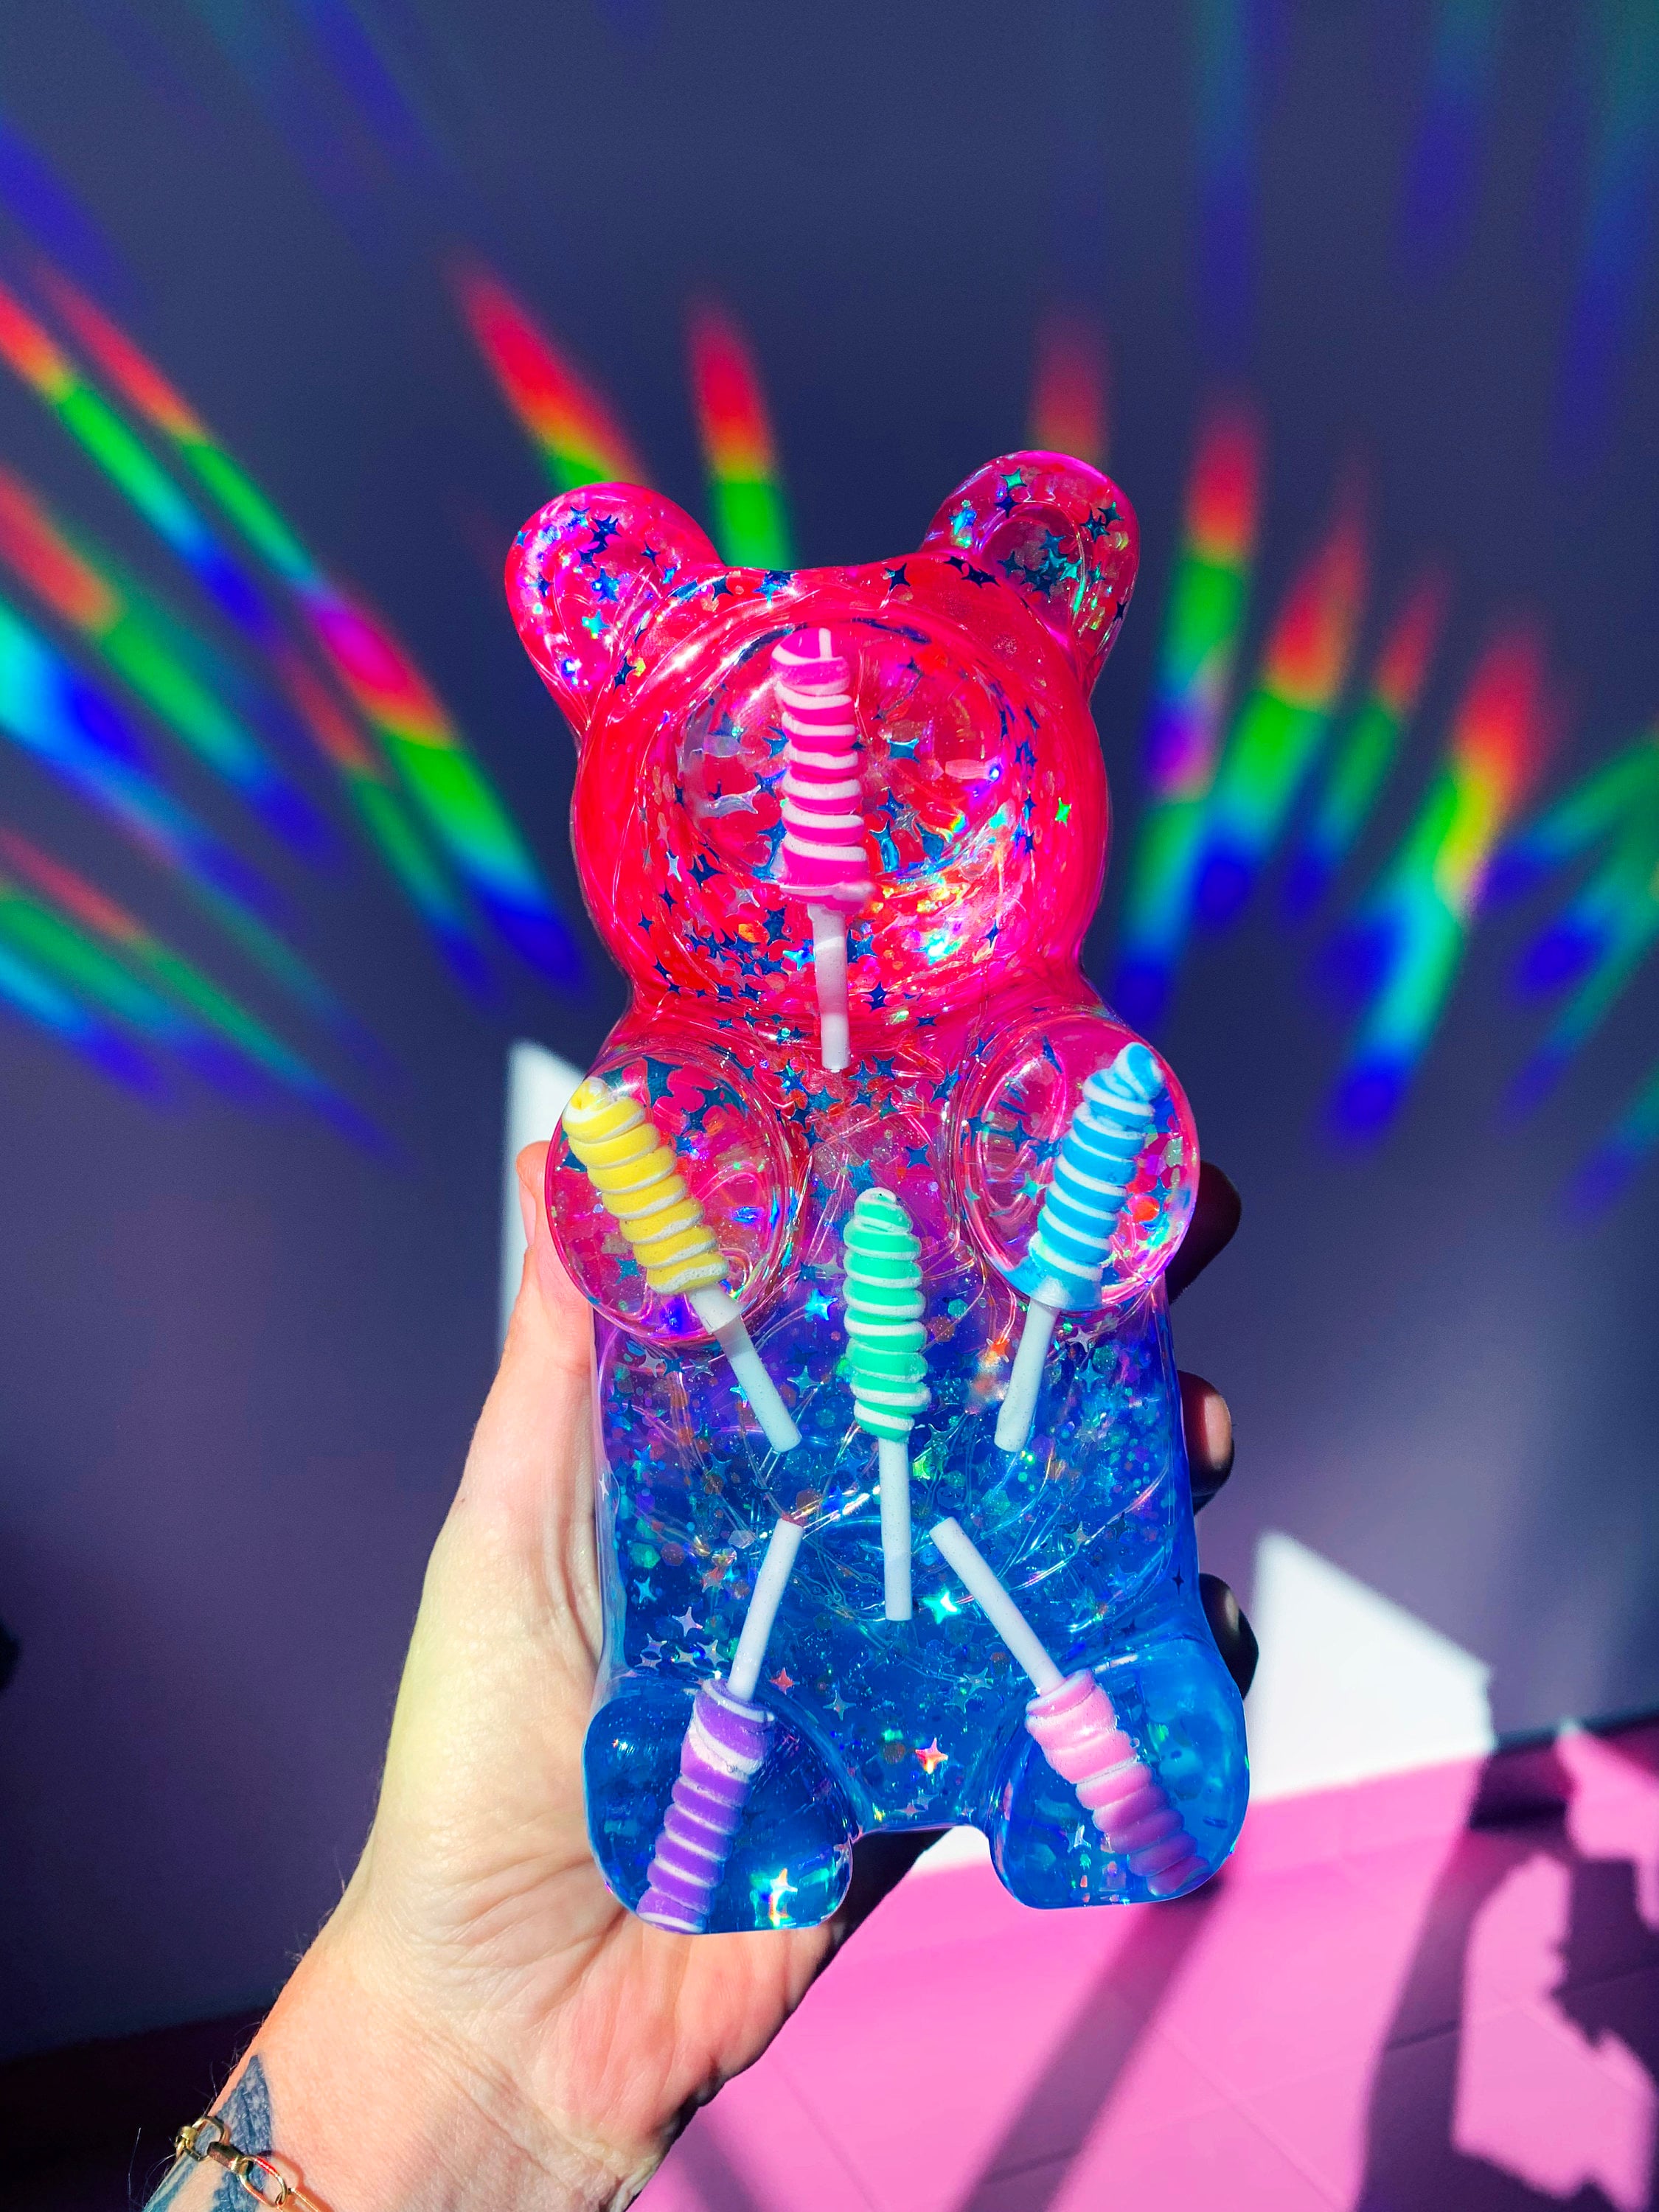 Pink Giant Gummy Bear Pop Art Resin Sculpture Pills Resin Art Neon Gummy  Bear Art Decor Candy Decor Gummy Bear Bookend Sculpture 